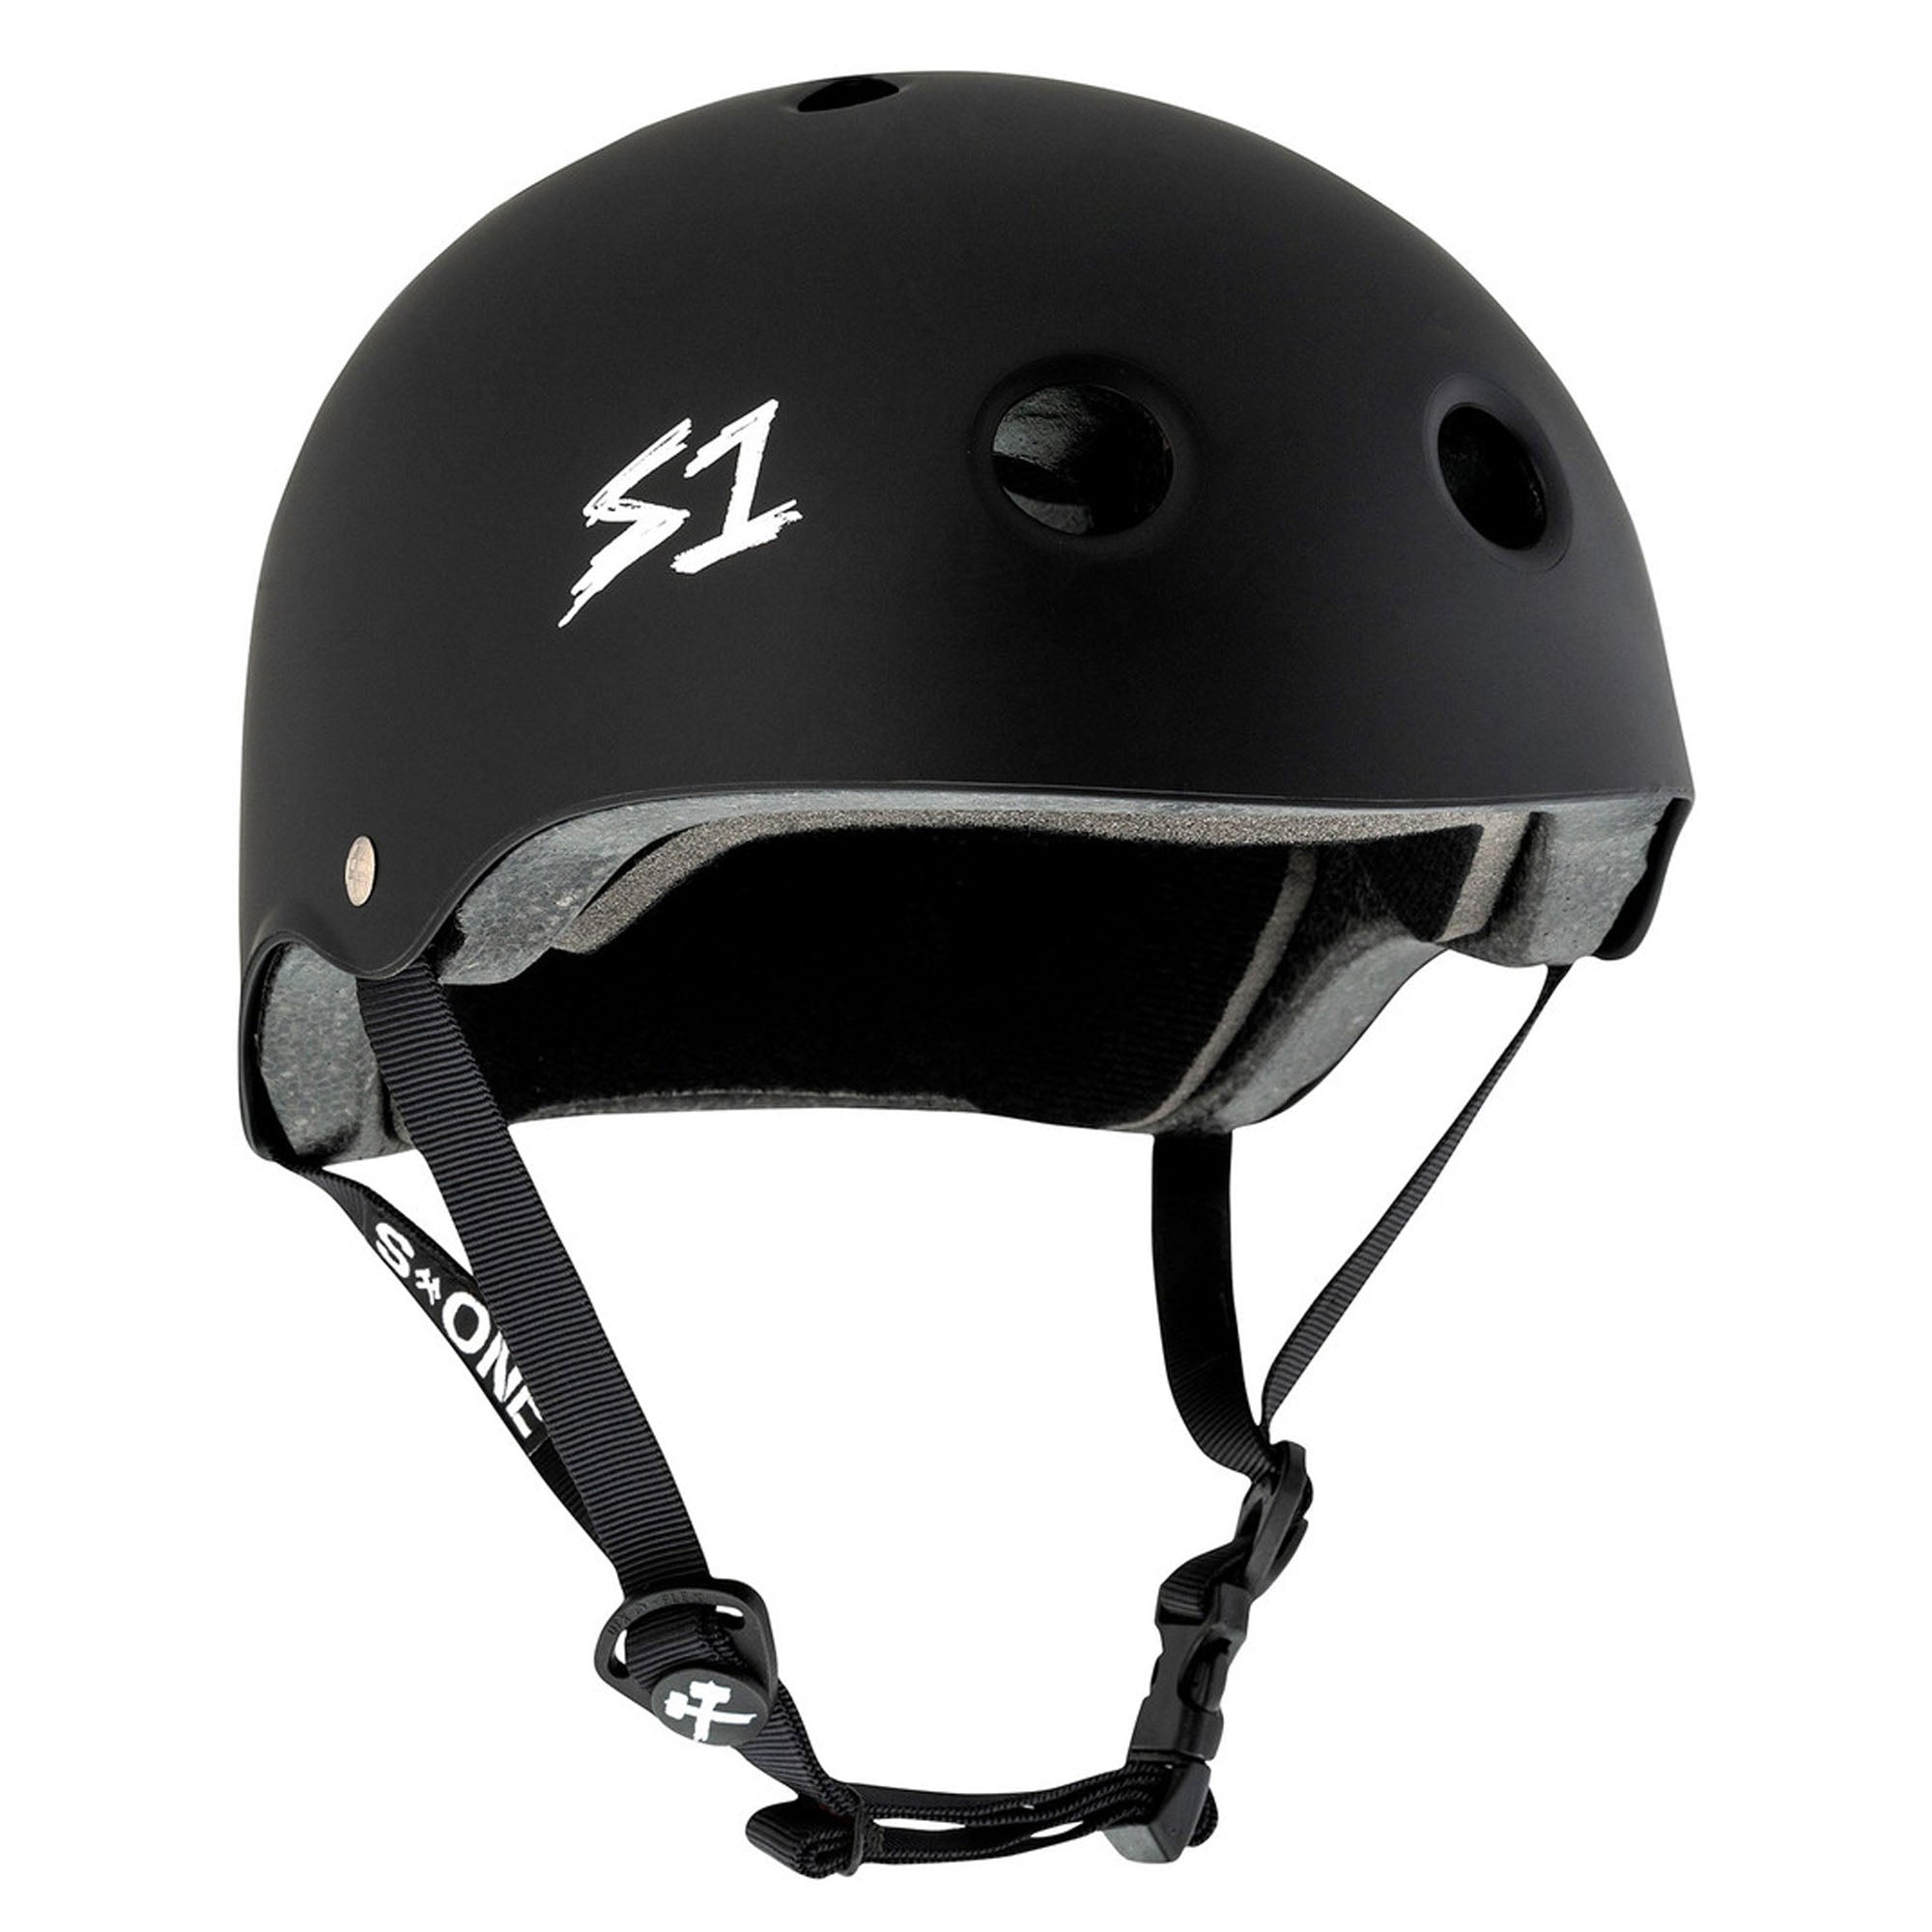 S1 Lifer Skate Helmet